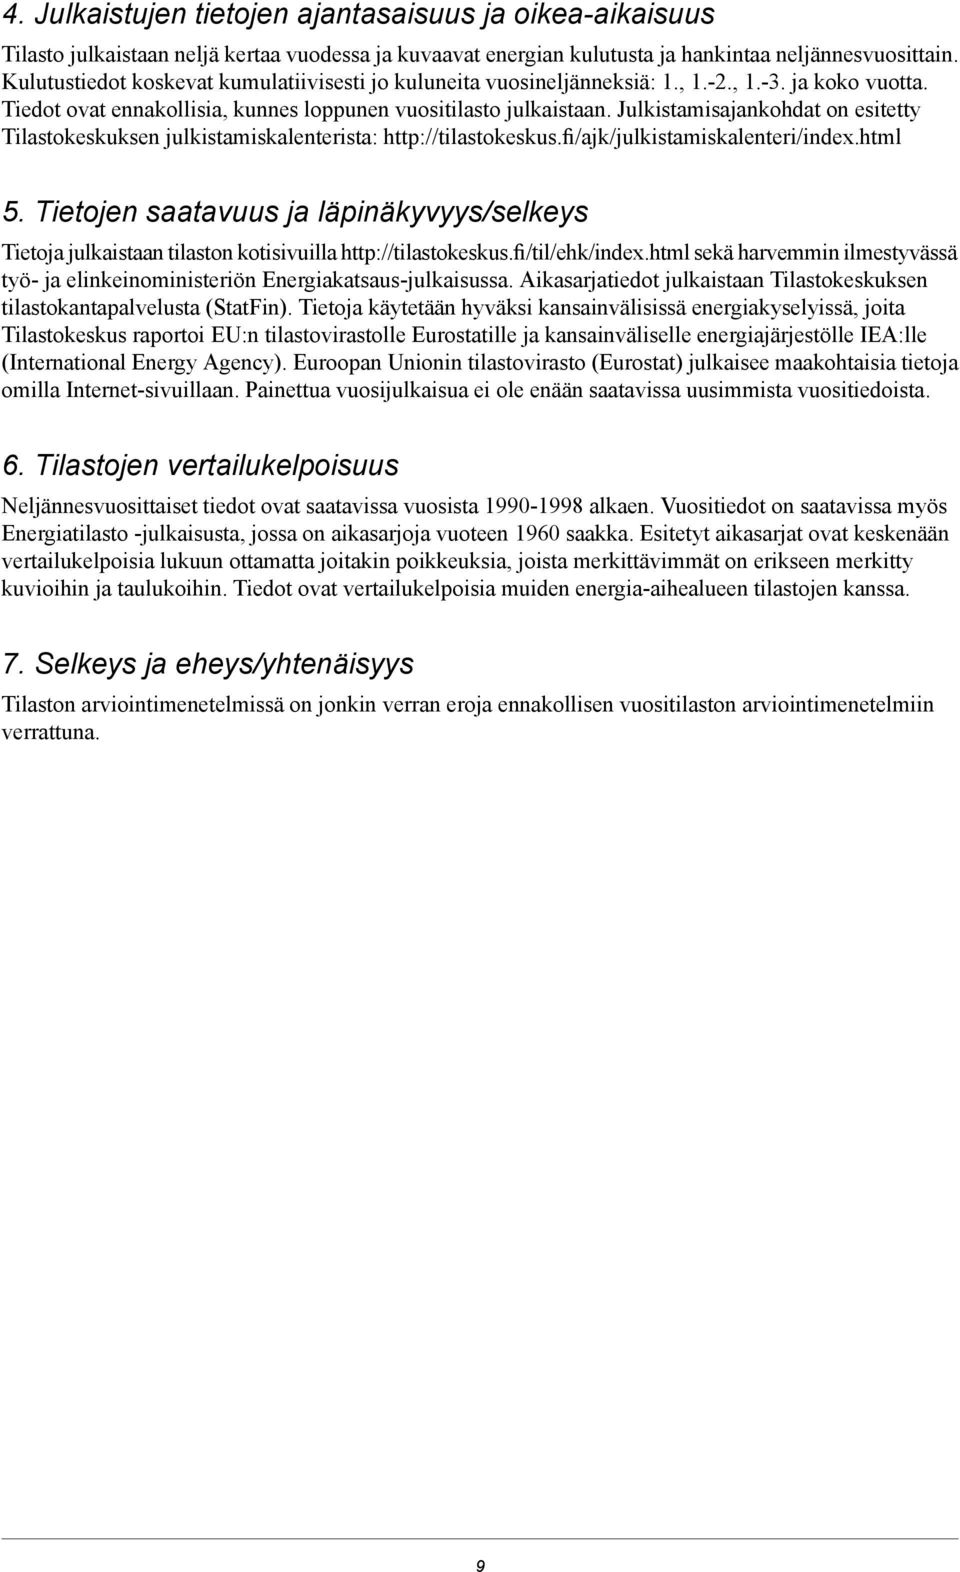 Julkistamisajankohdat on esitetty Tilastokeskuksen julkistamiskalenterista: http://tilastokeskus.fi/ajk/julkistamiskalenteri/index.html 5.